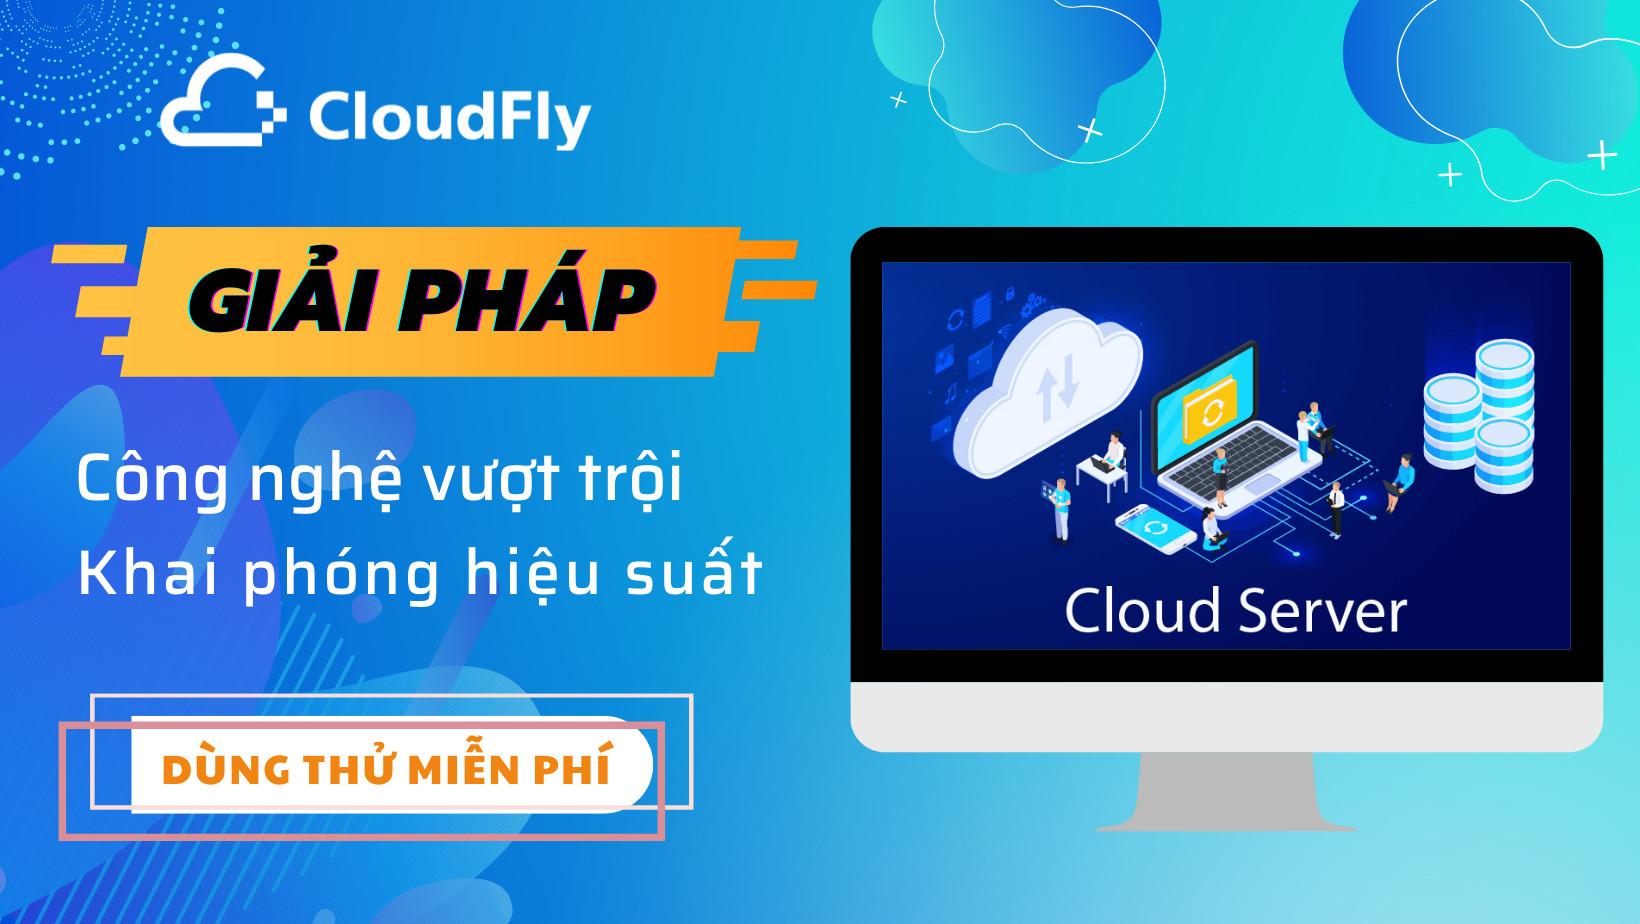 cloudfly cho thuê cloud hosting chất lượng